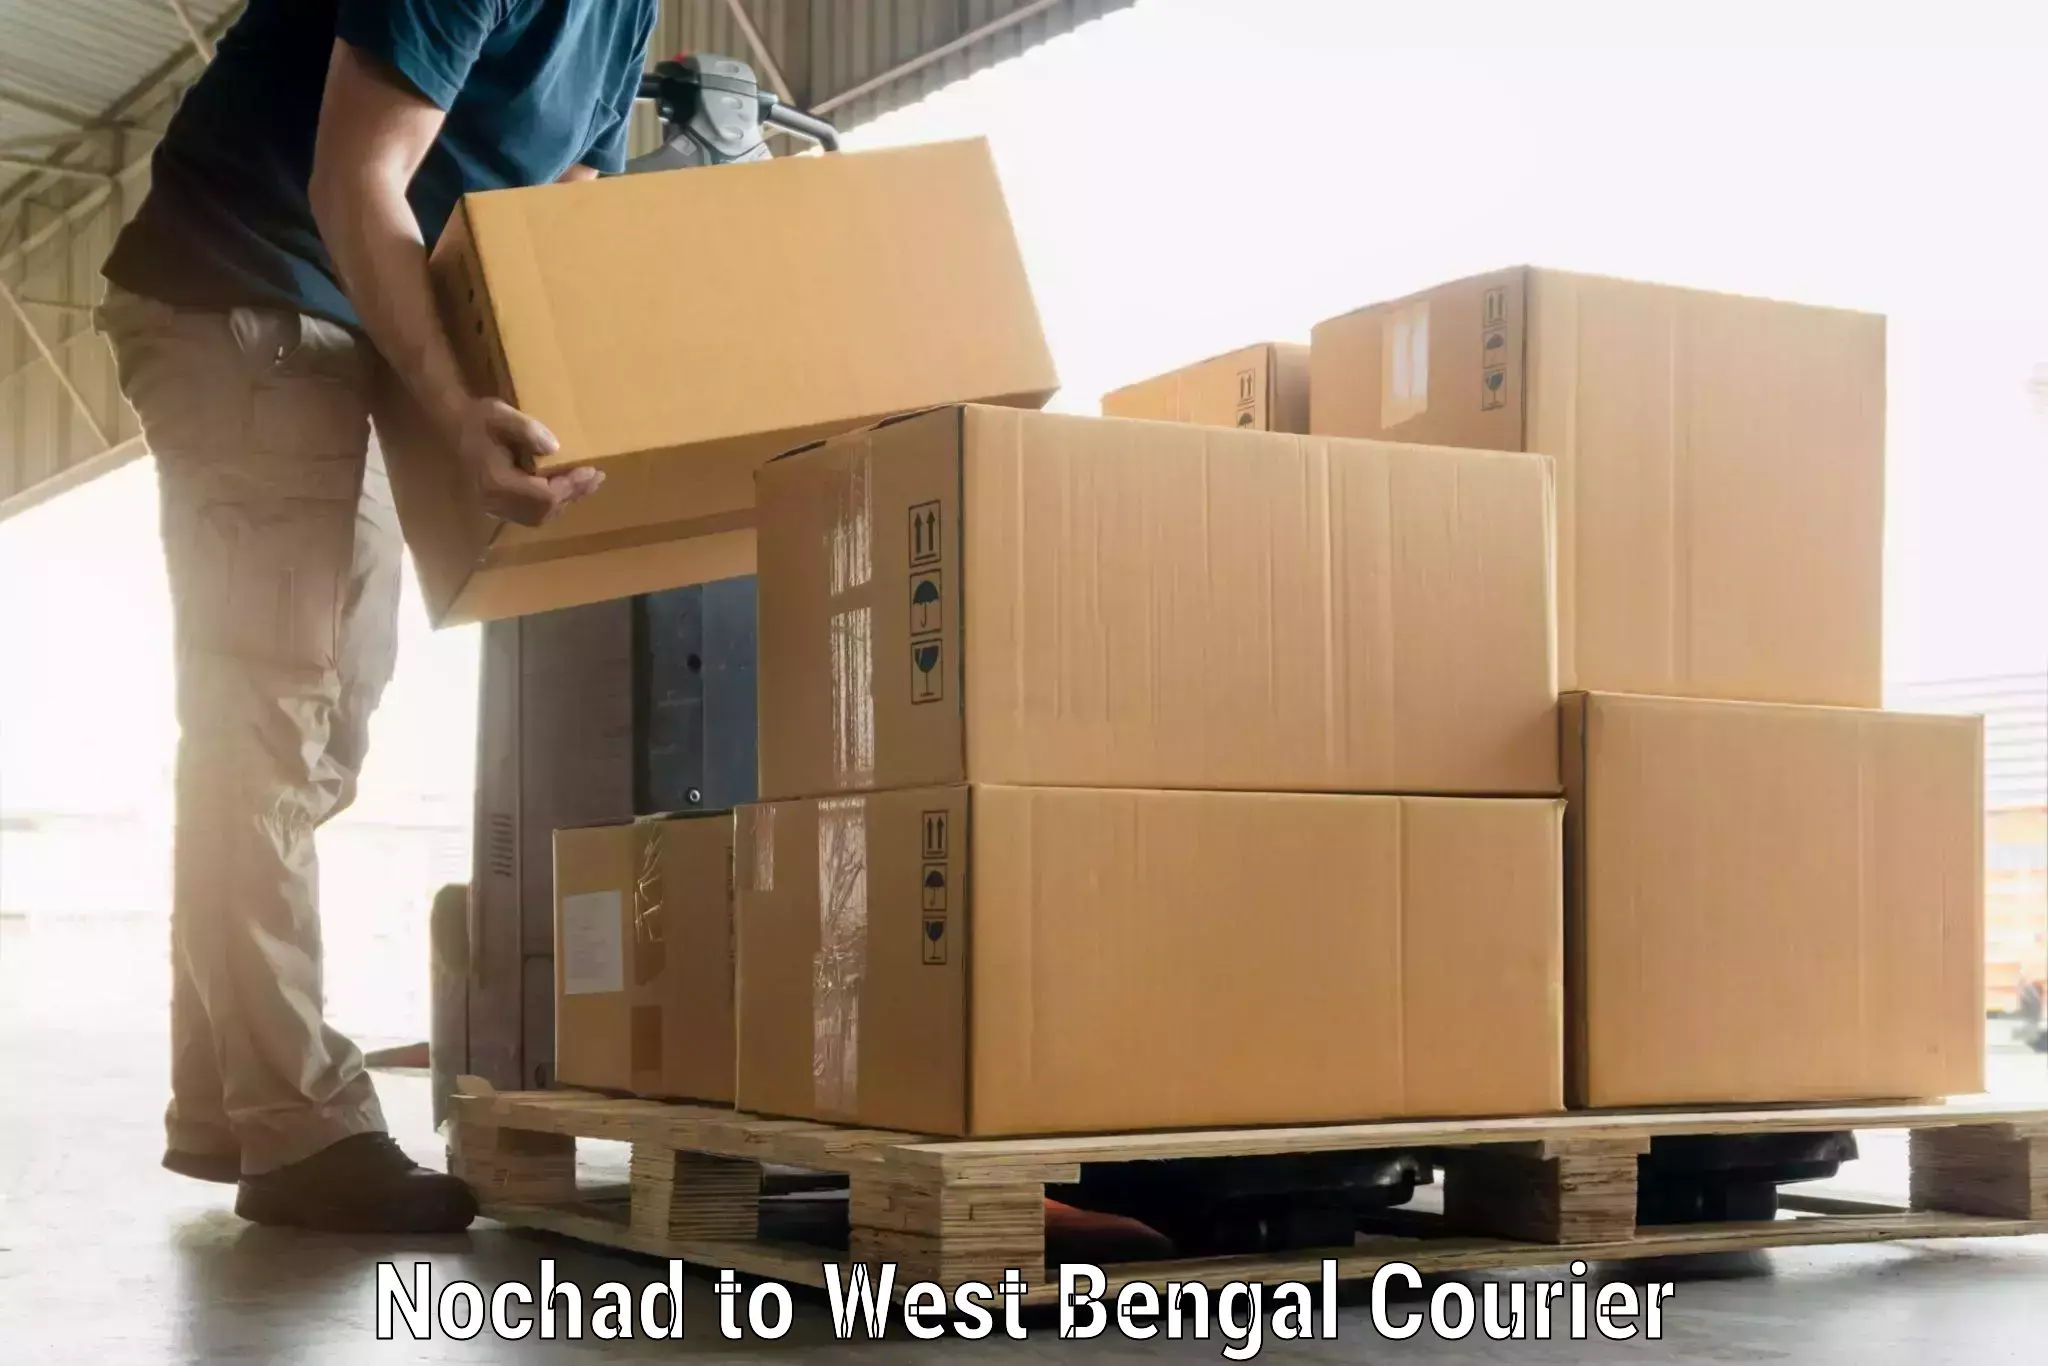 Luggage shipment specialists Nochad to Bajkul